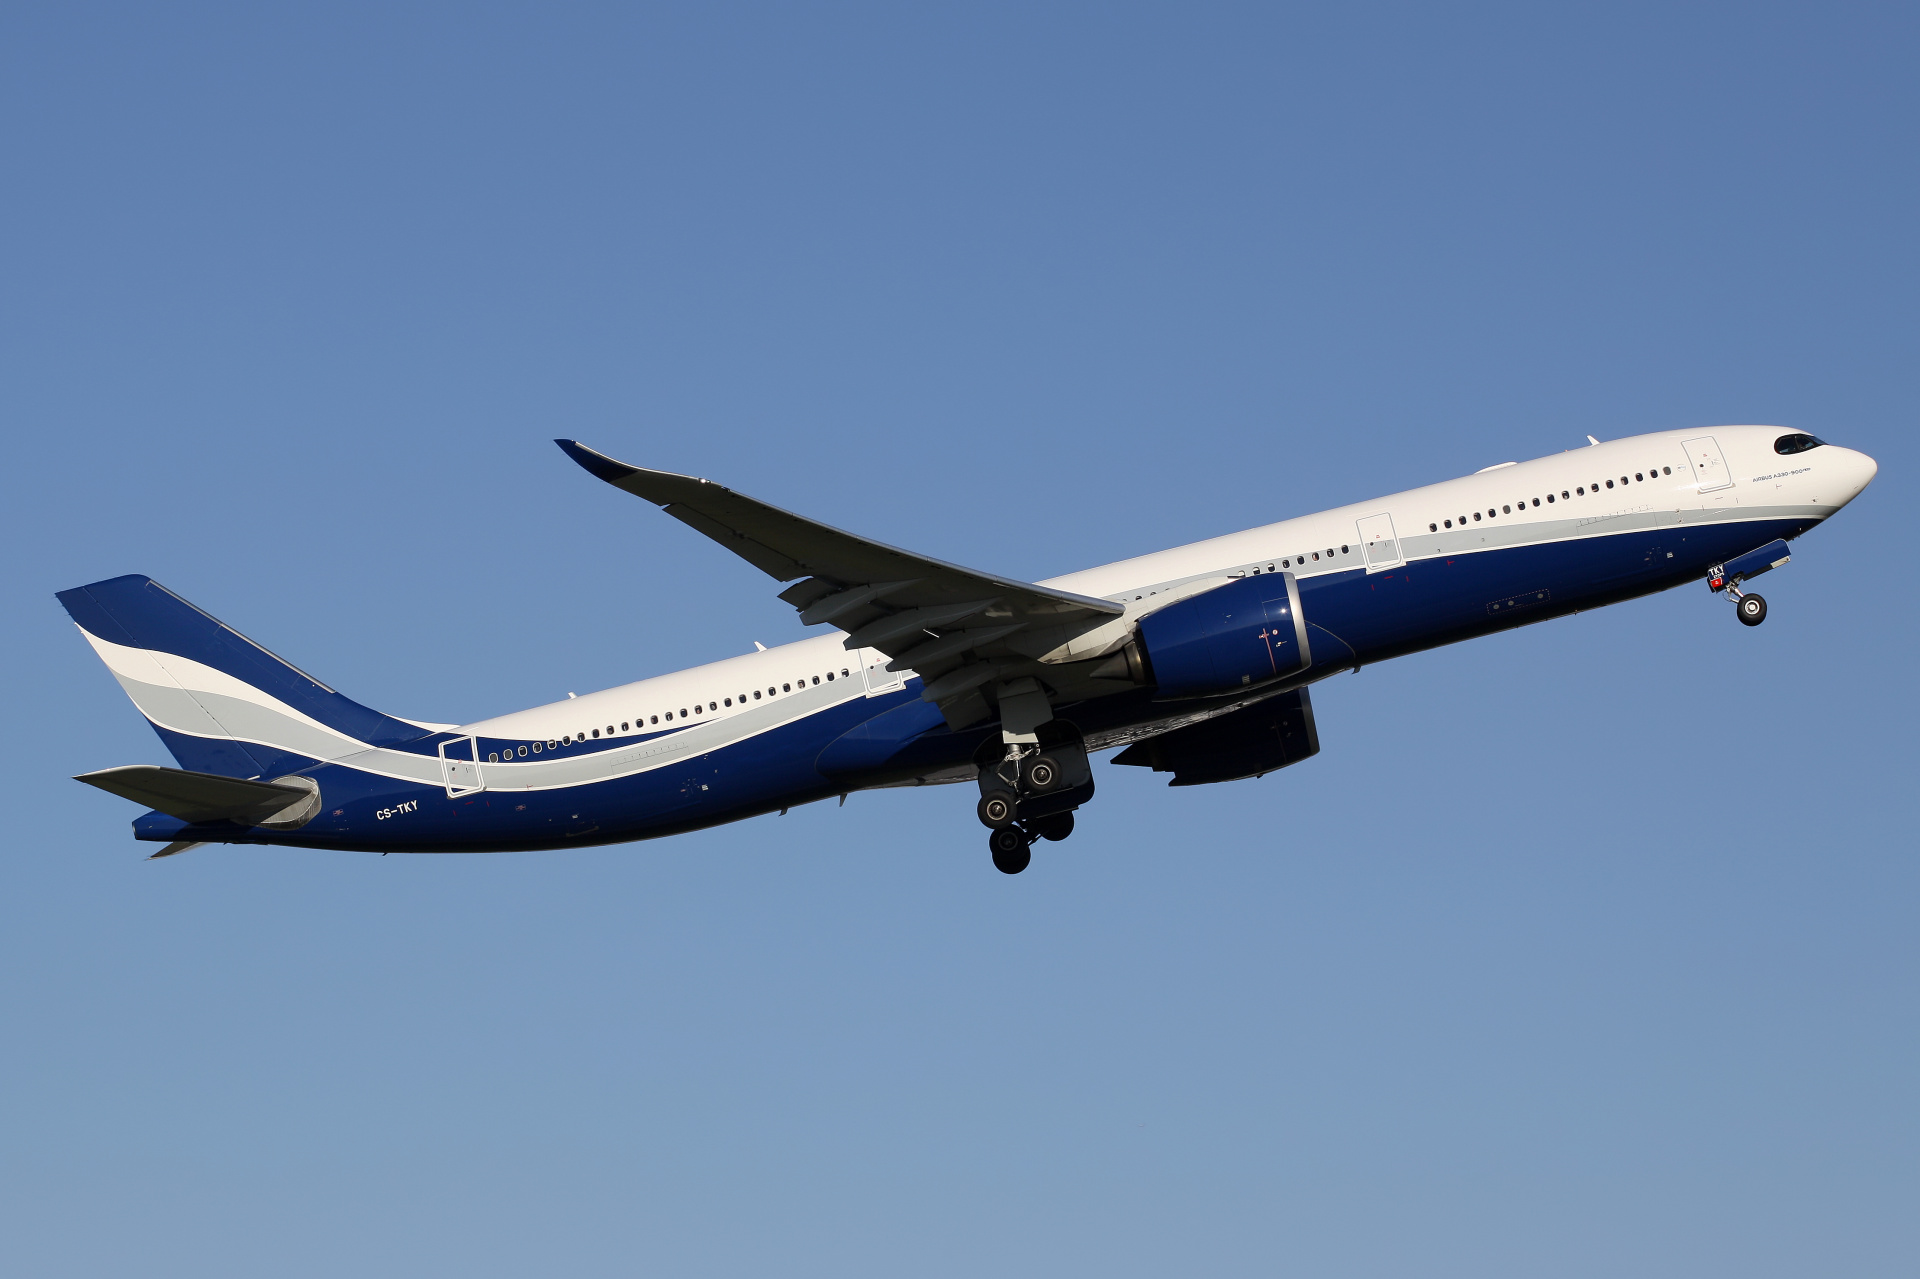 CS-TKY, Hi Fly (Aircraft » EPWA Spotting » Airbus A330-900 (A330neo))